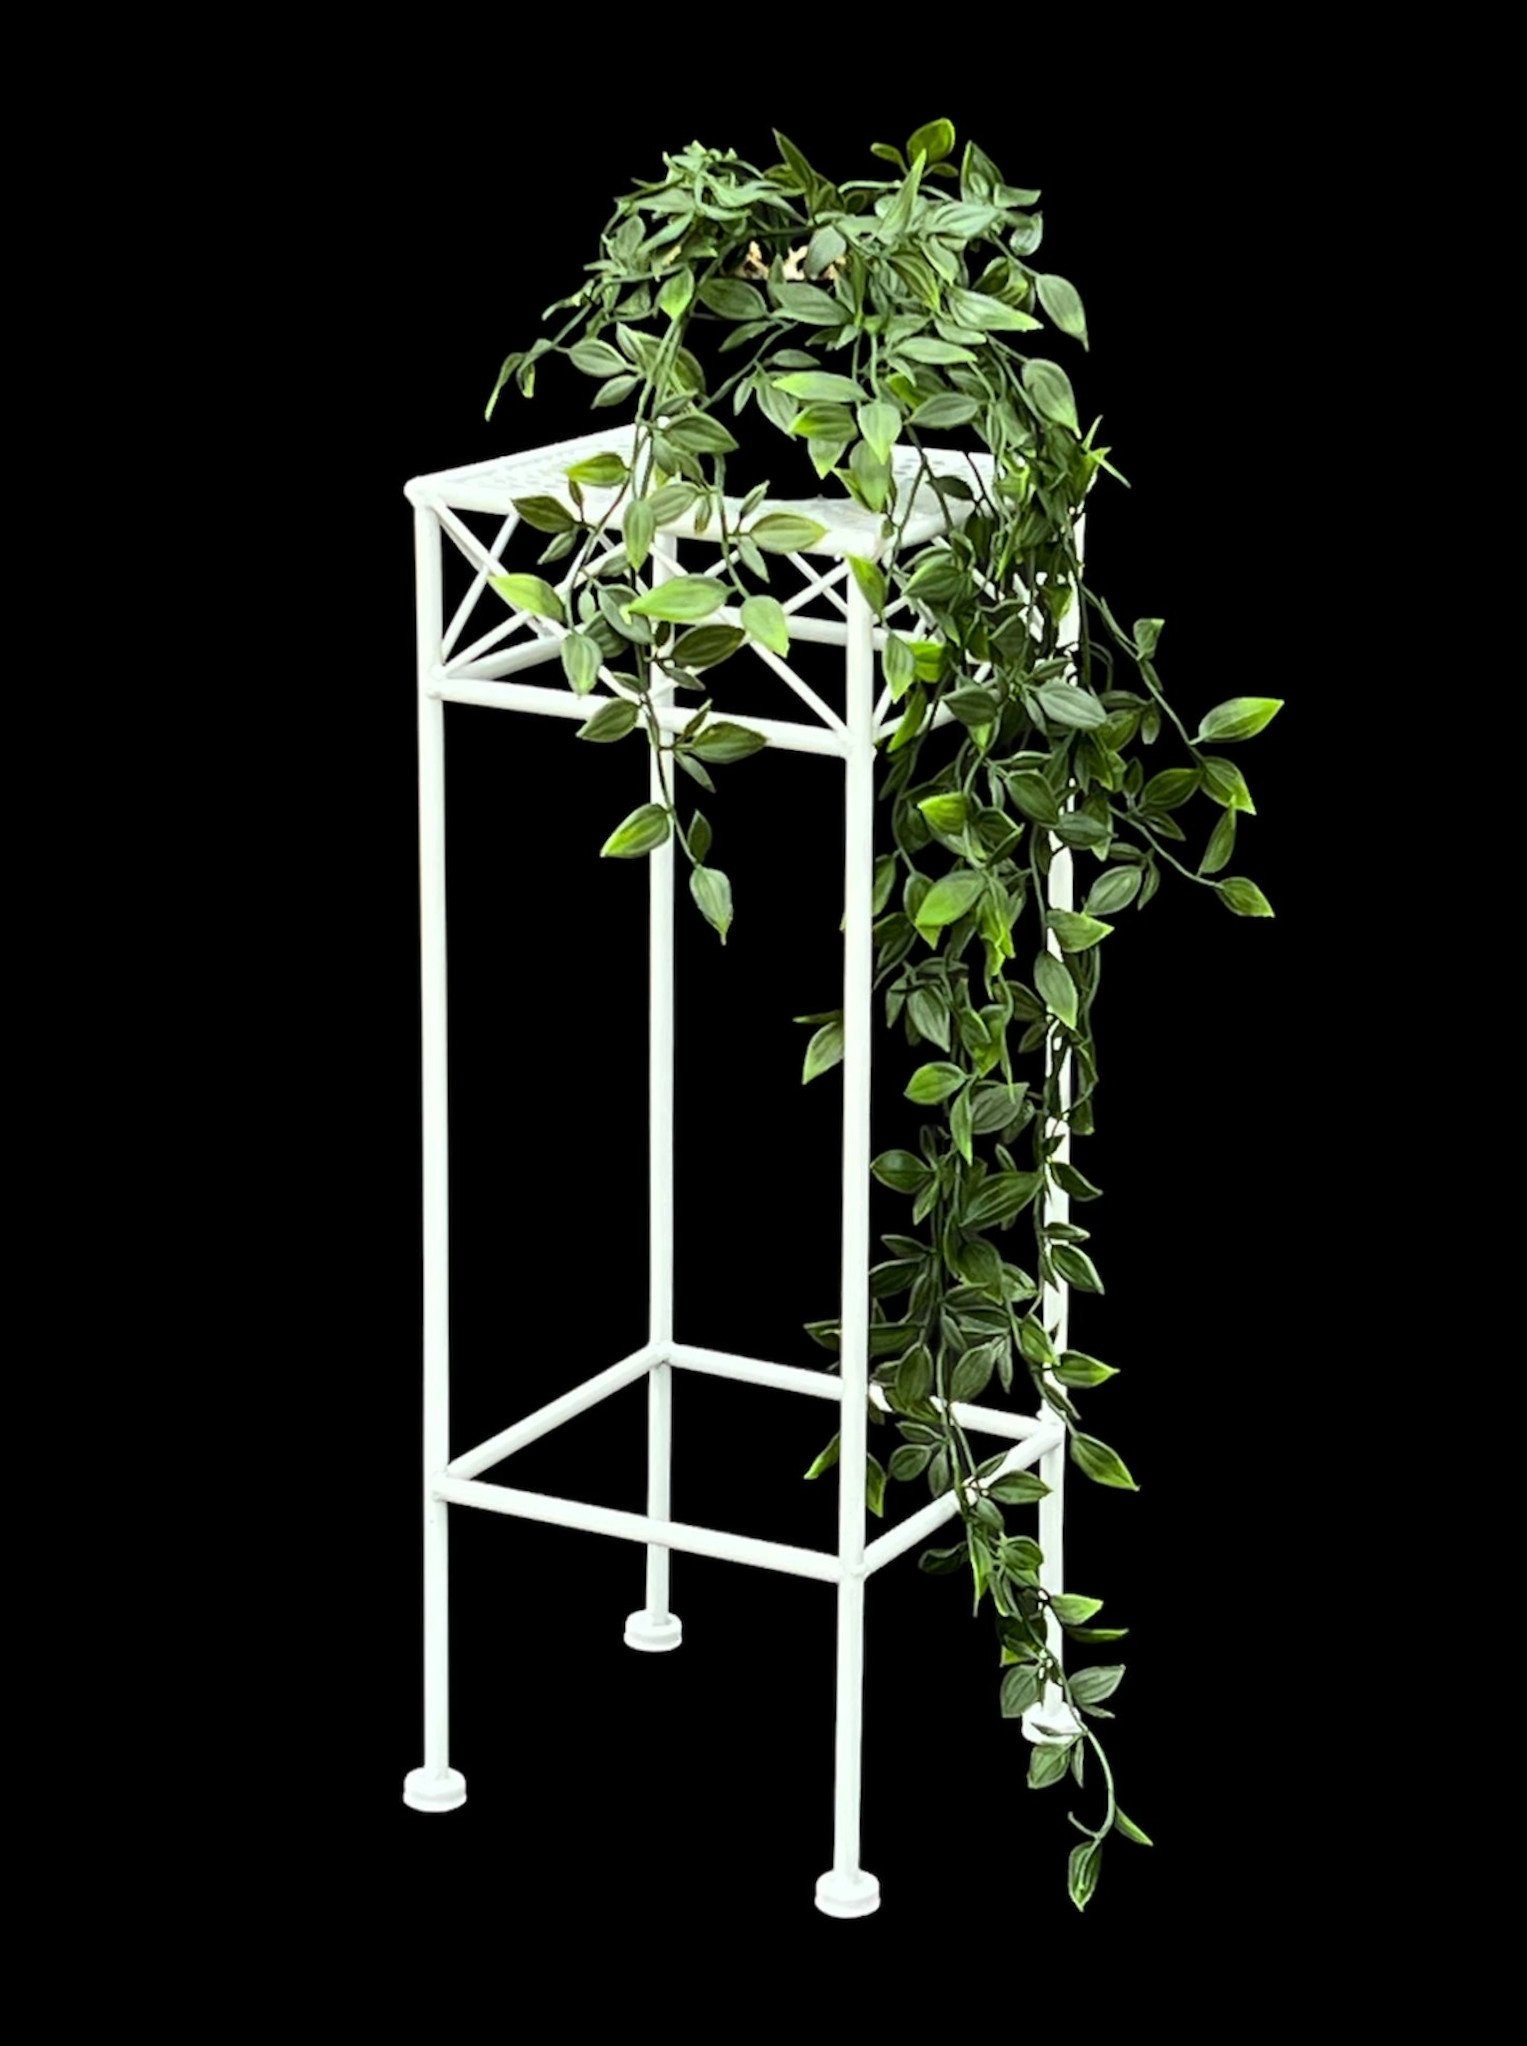 DanDiBo Beistelltisch Weiß Blumenständer cm Blumenhocker Blumenständer 70-50 Eckig Metall